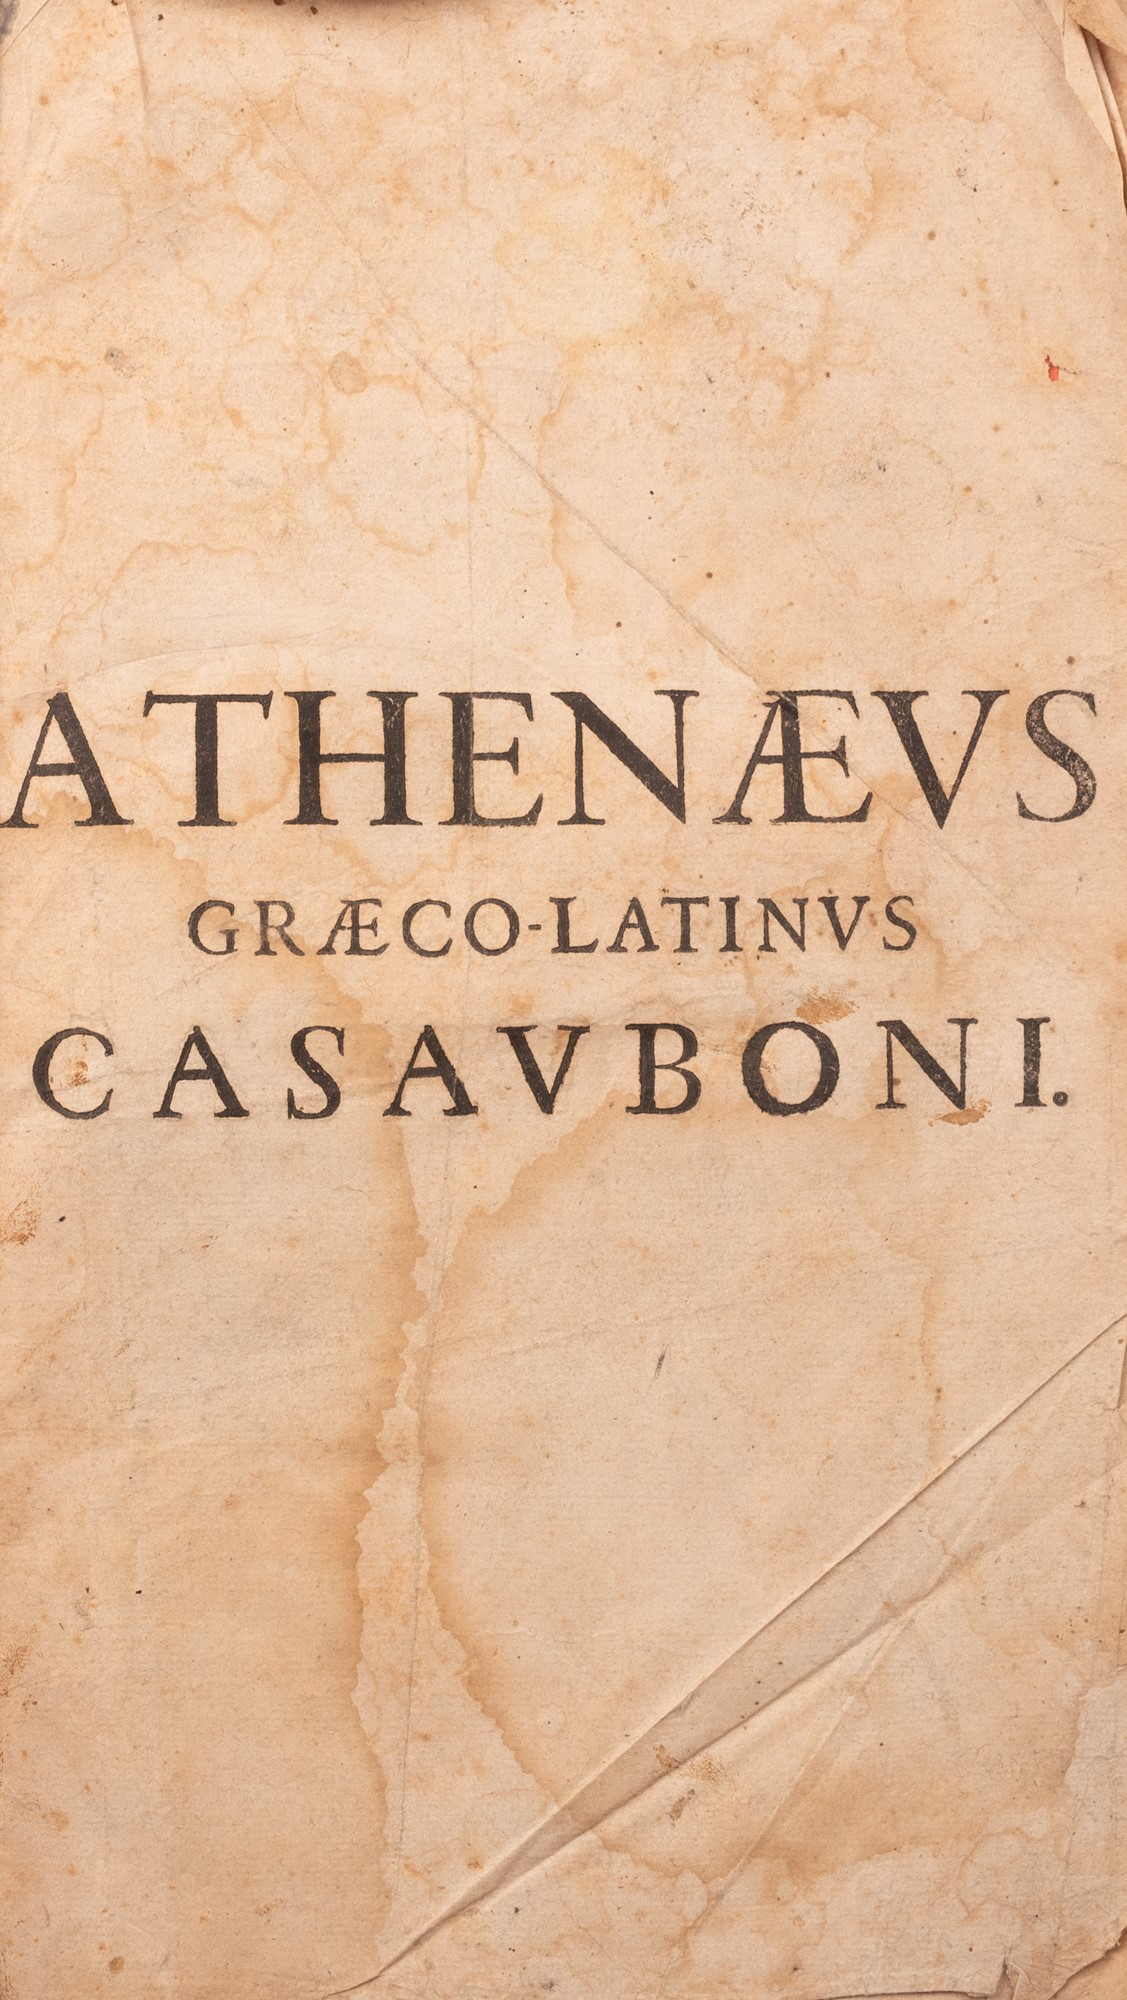 Athenaeus Deipnosophists - Image 2 of 3